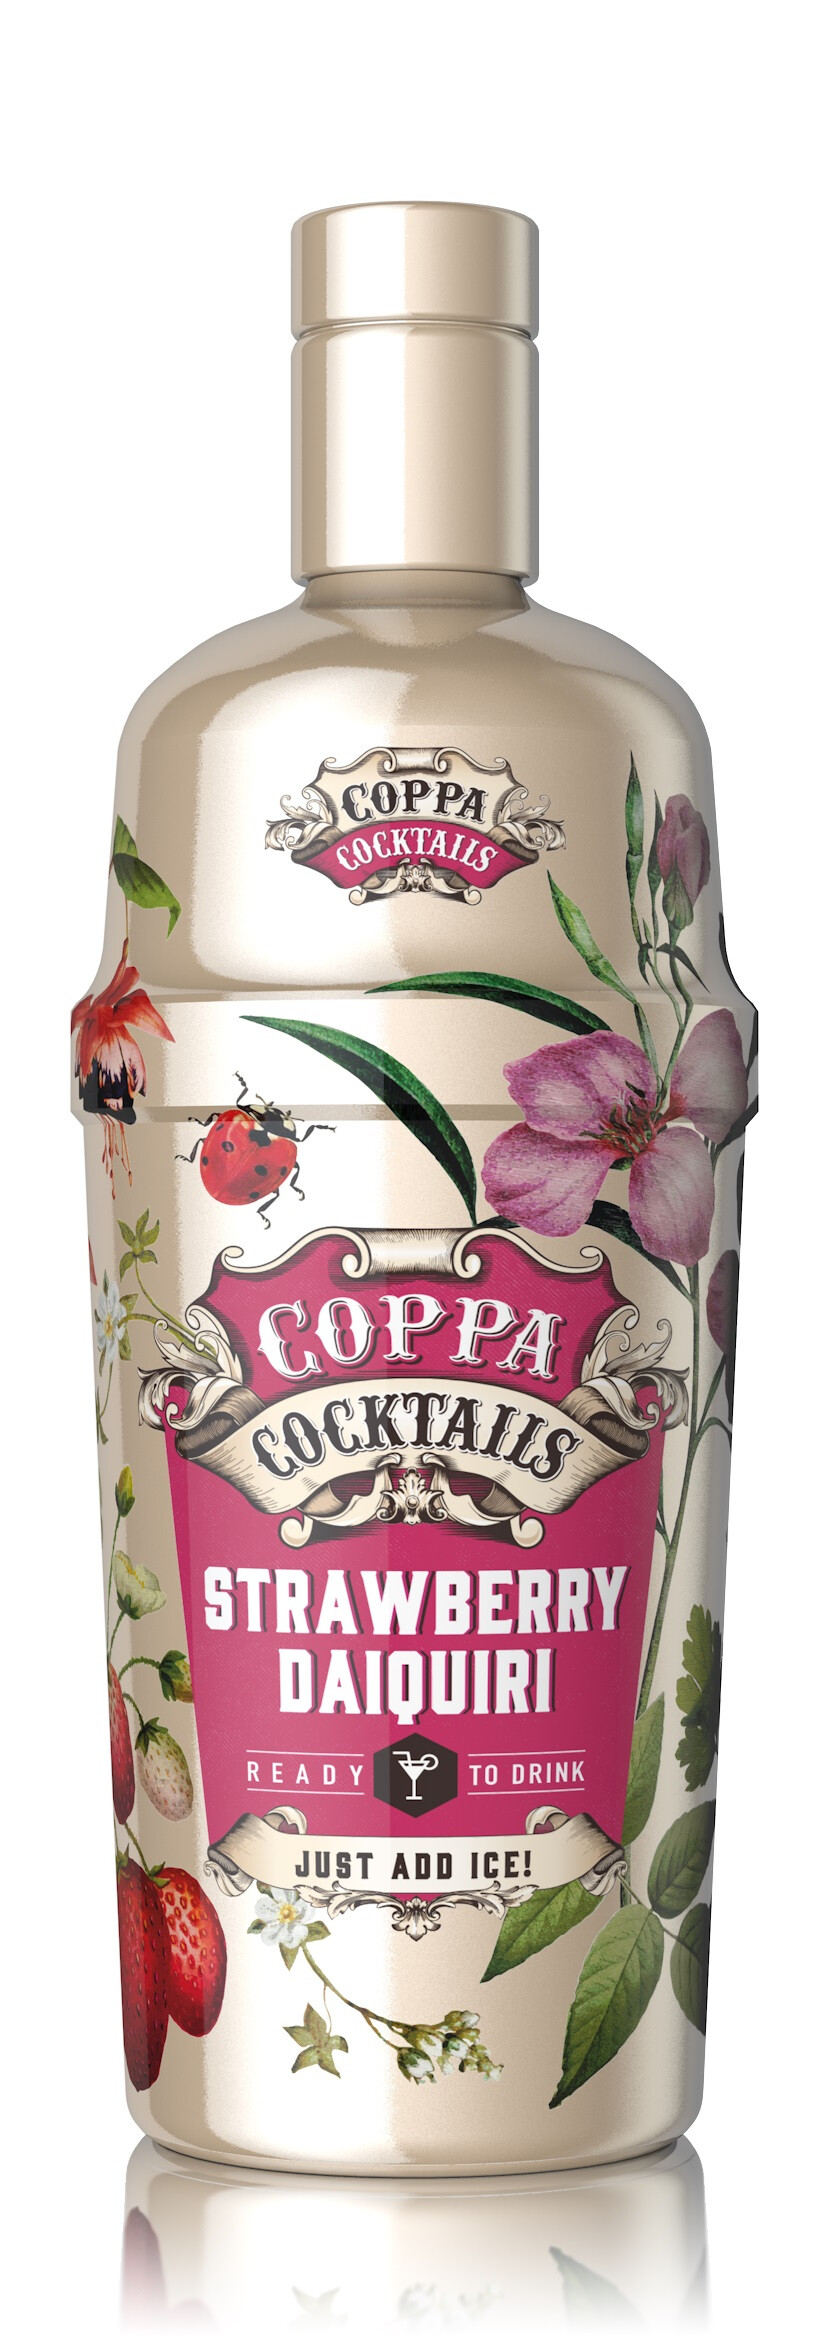 Coppa Cocktails Strawberry Daiquiri 70cl 10%